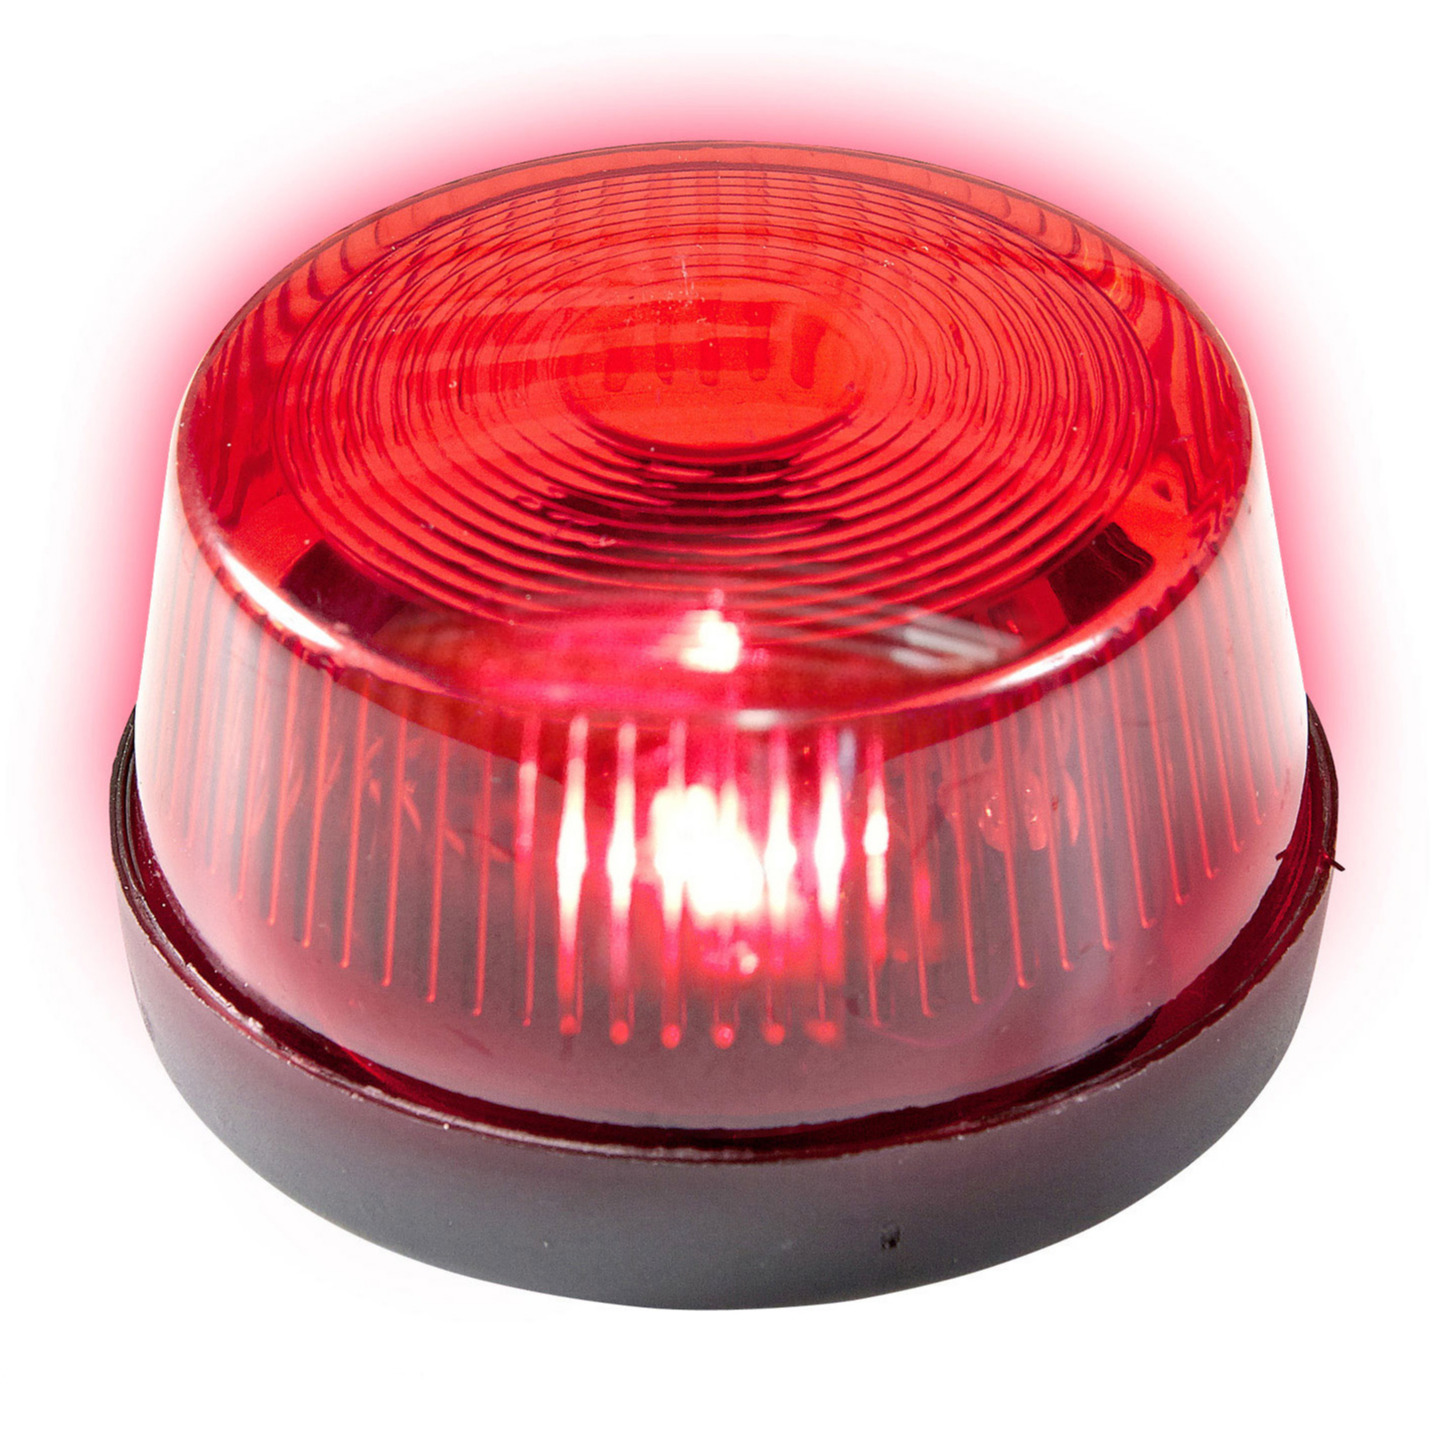 Rode politie LED zwaailamp-zwaailicht met sirene 7 cm